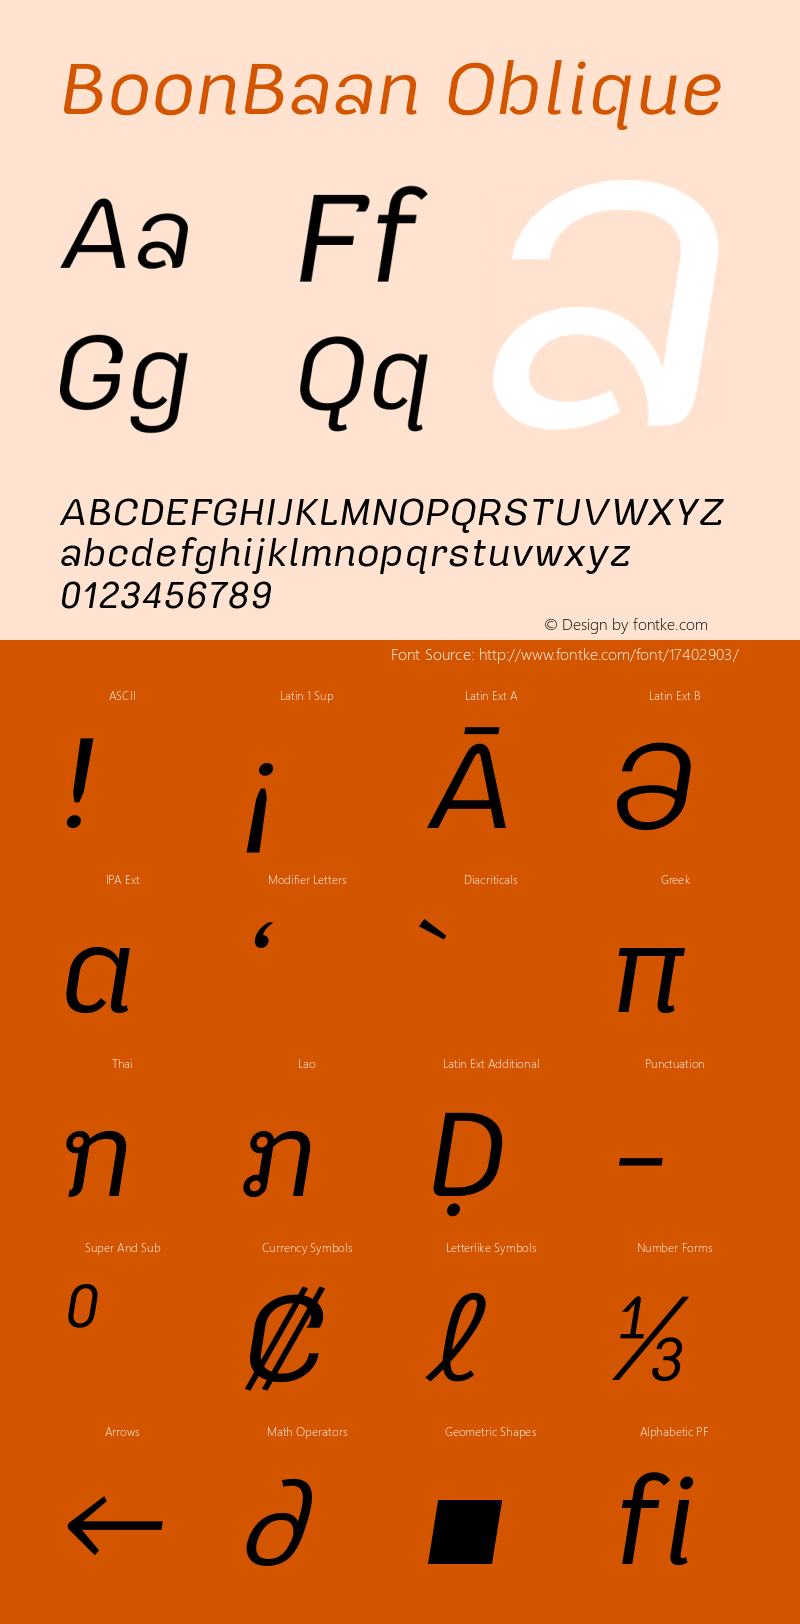 BoonBaan Oblique Version 1.0.1 Font Sample